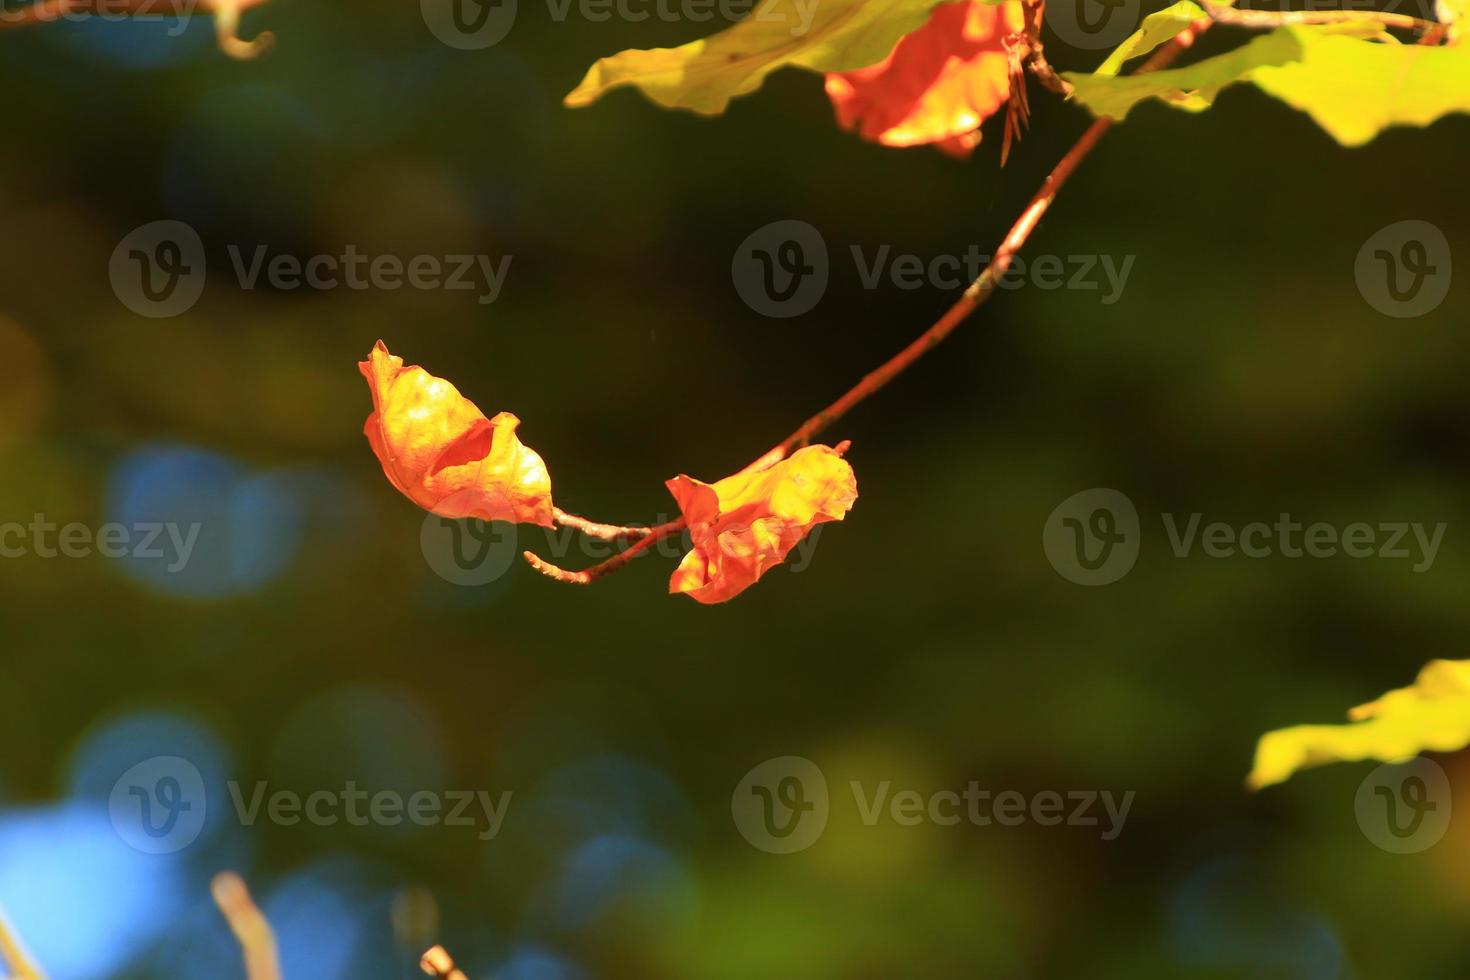 autunno alberi e le foglie con colorato fogliame nel il parco. foto